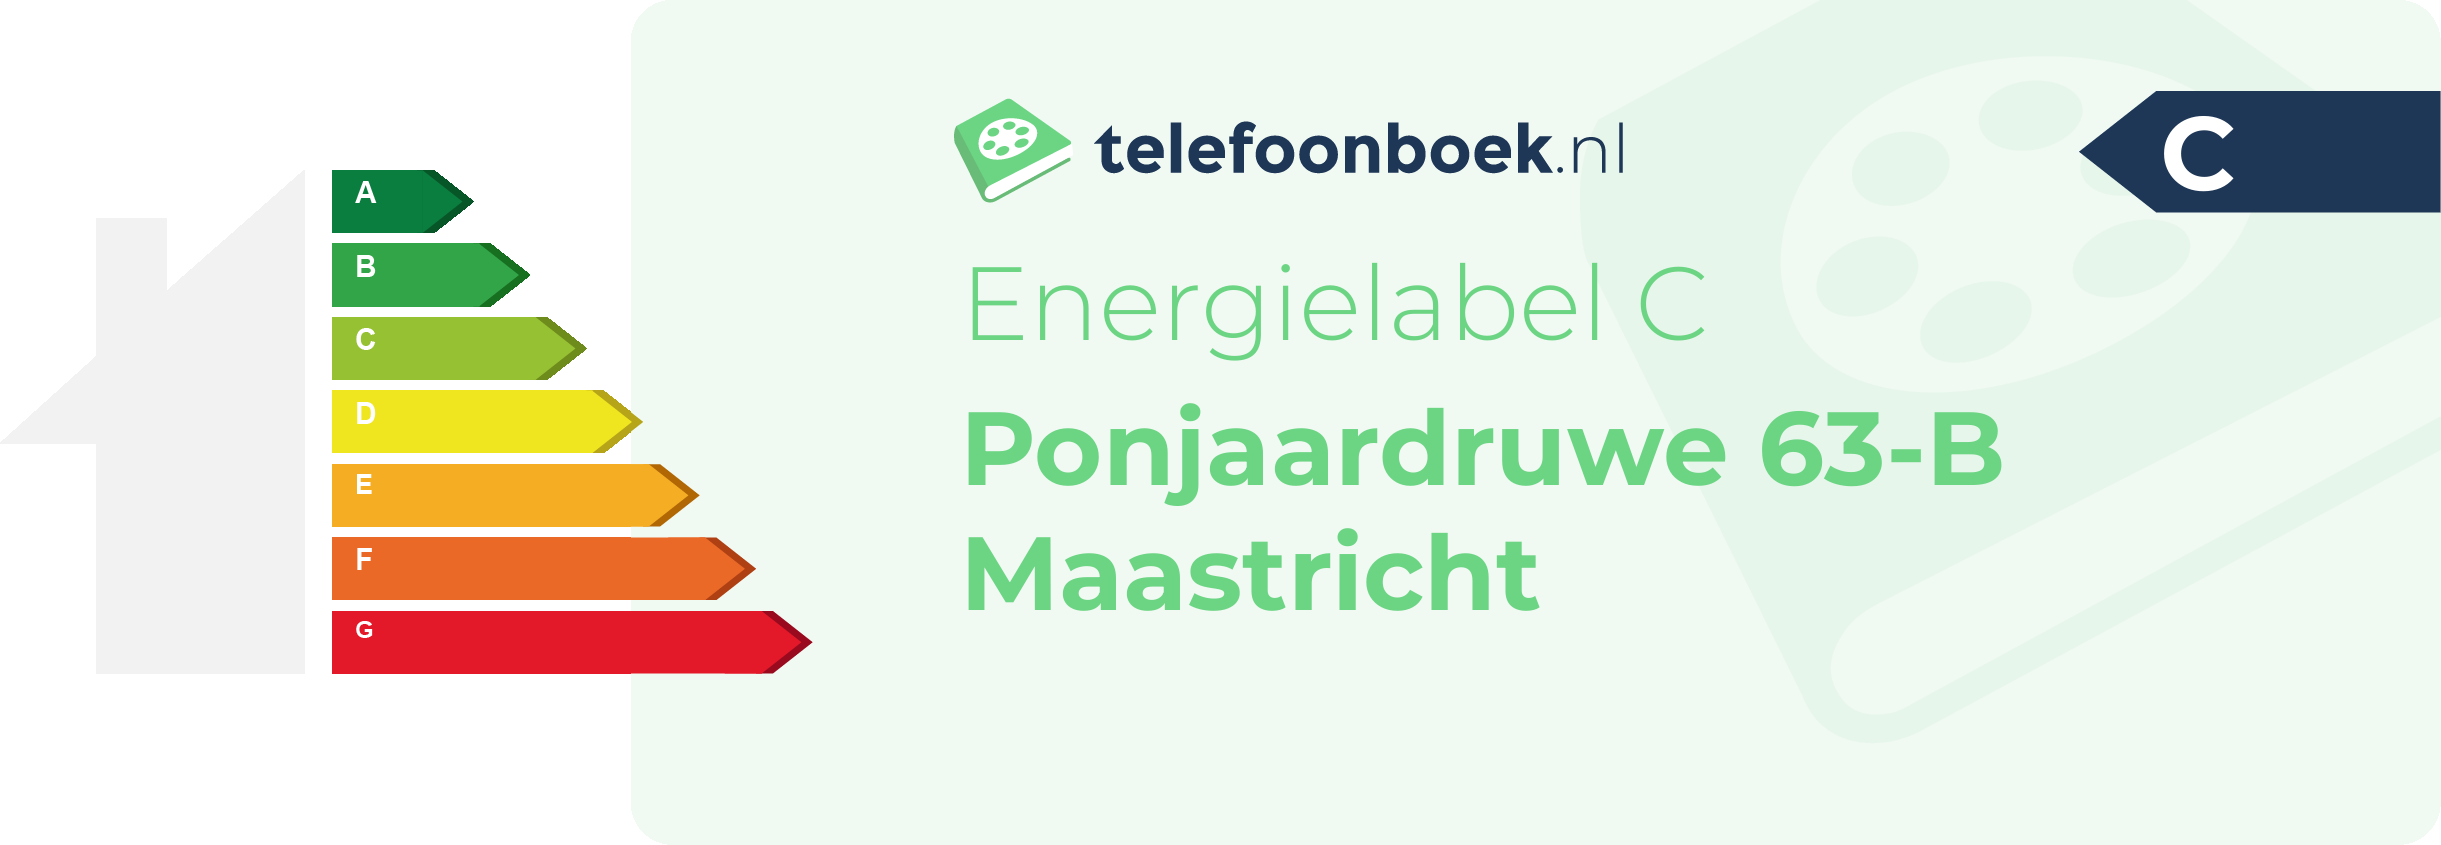 Energielabel Ponjaardruwe 63-B Maastricht